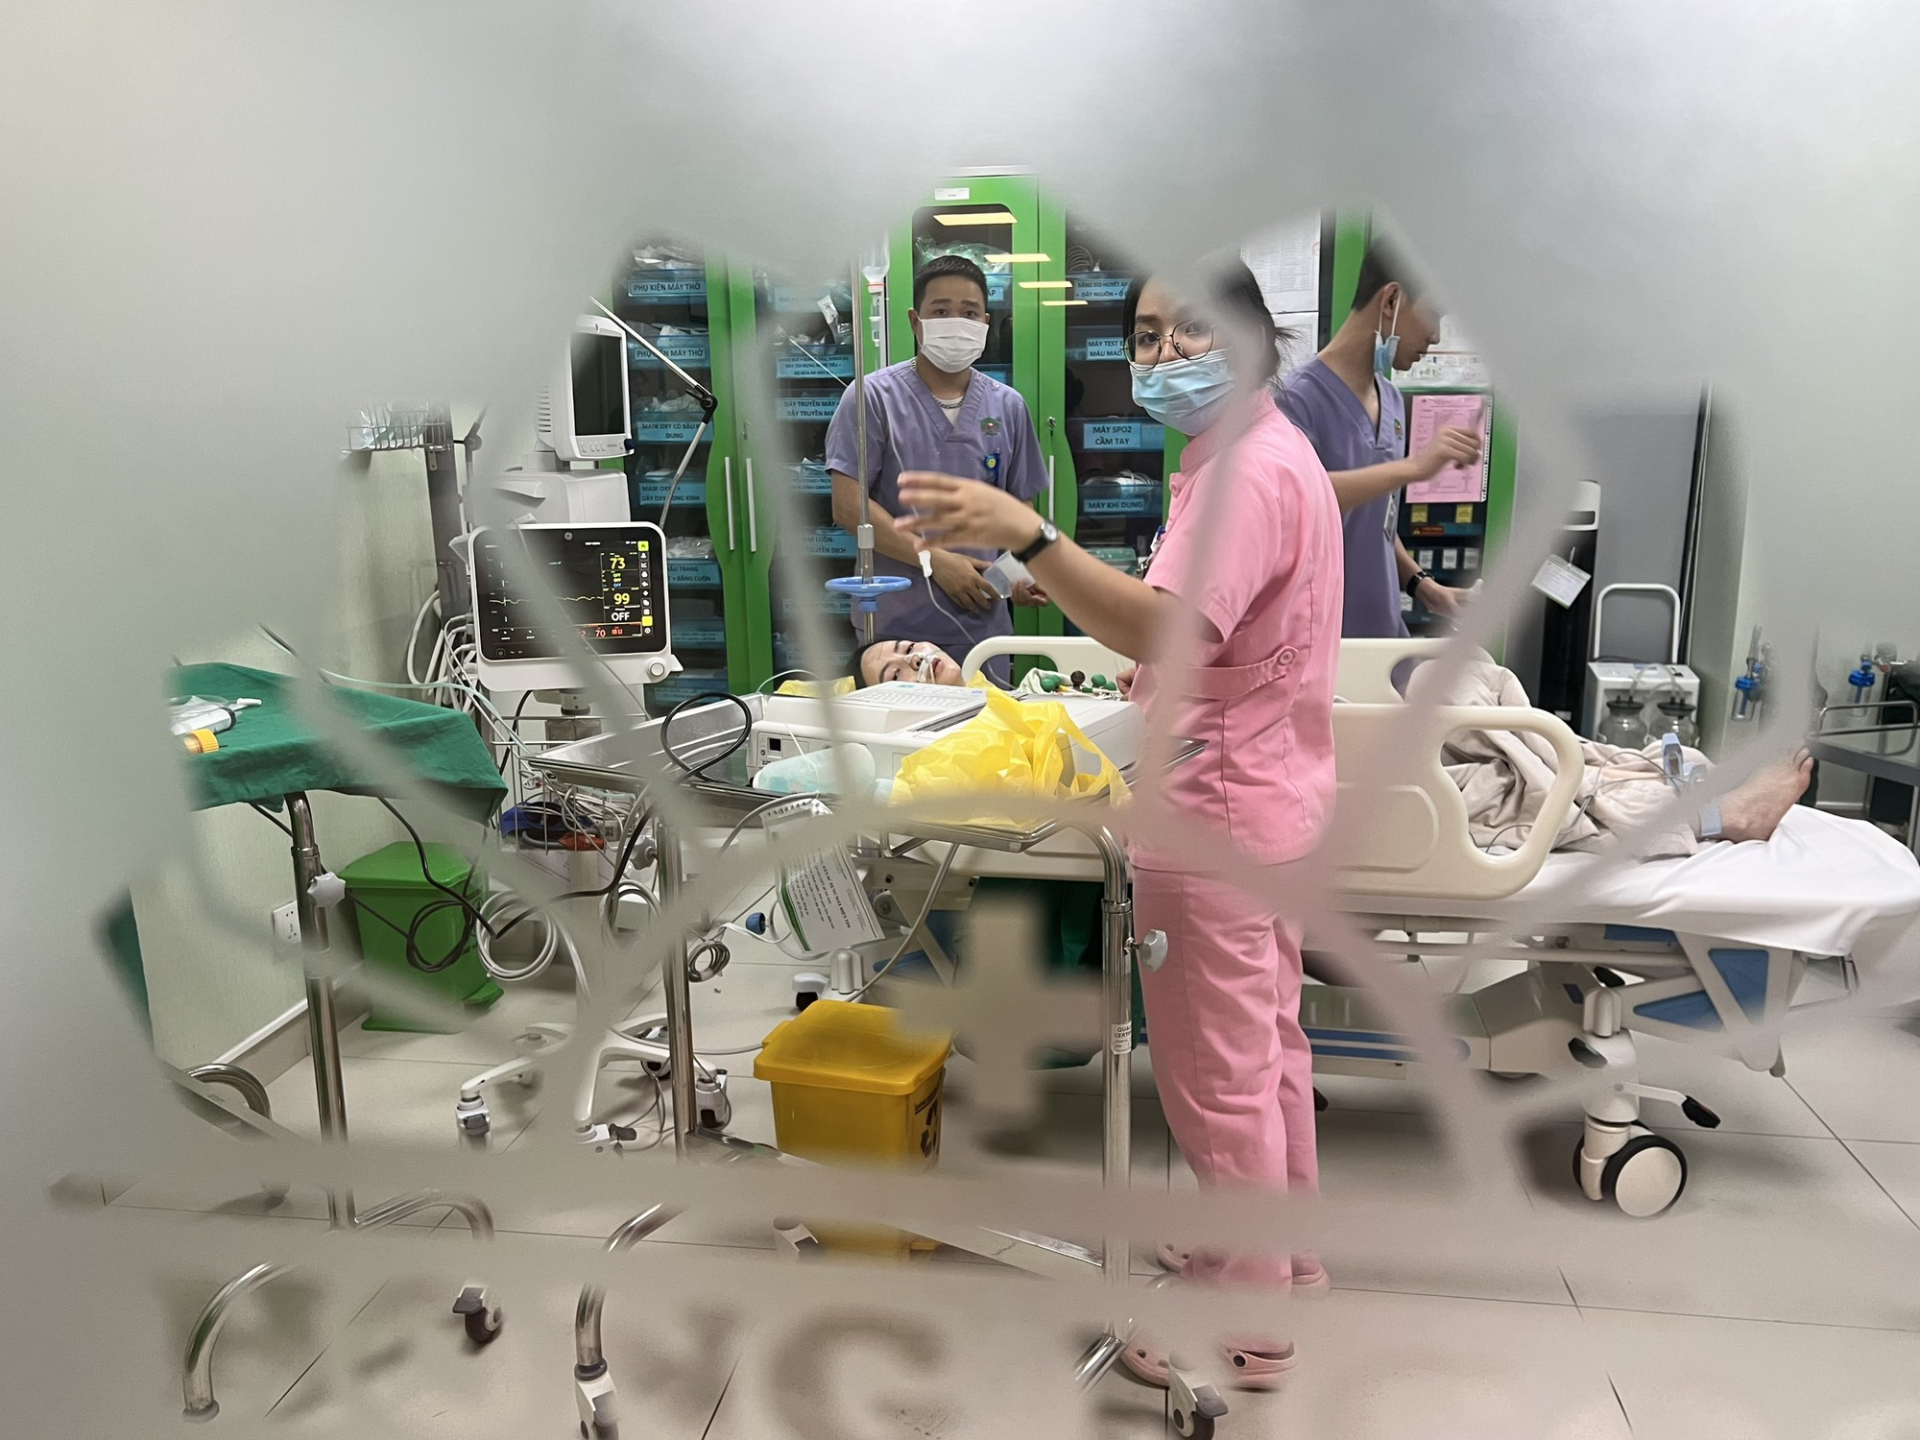 Giữa lúc Chu Thanh Huyền livestream đang nằm trong bệnh viện, Quang Hải có hành động làm rõ mối quan hệ - ảnh 1